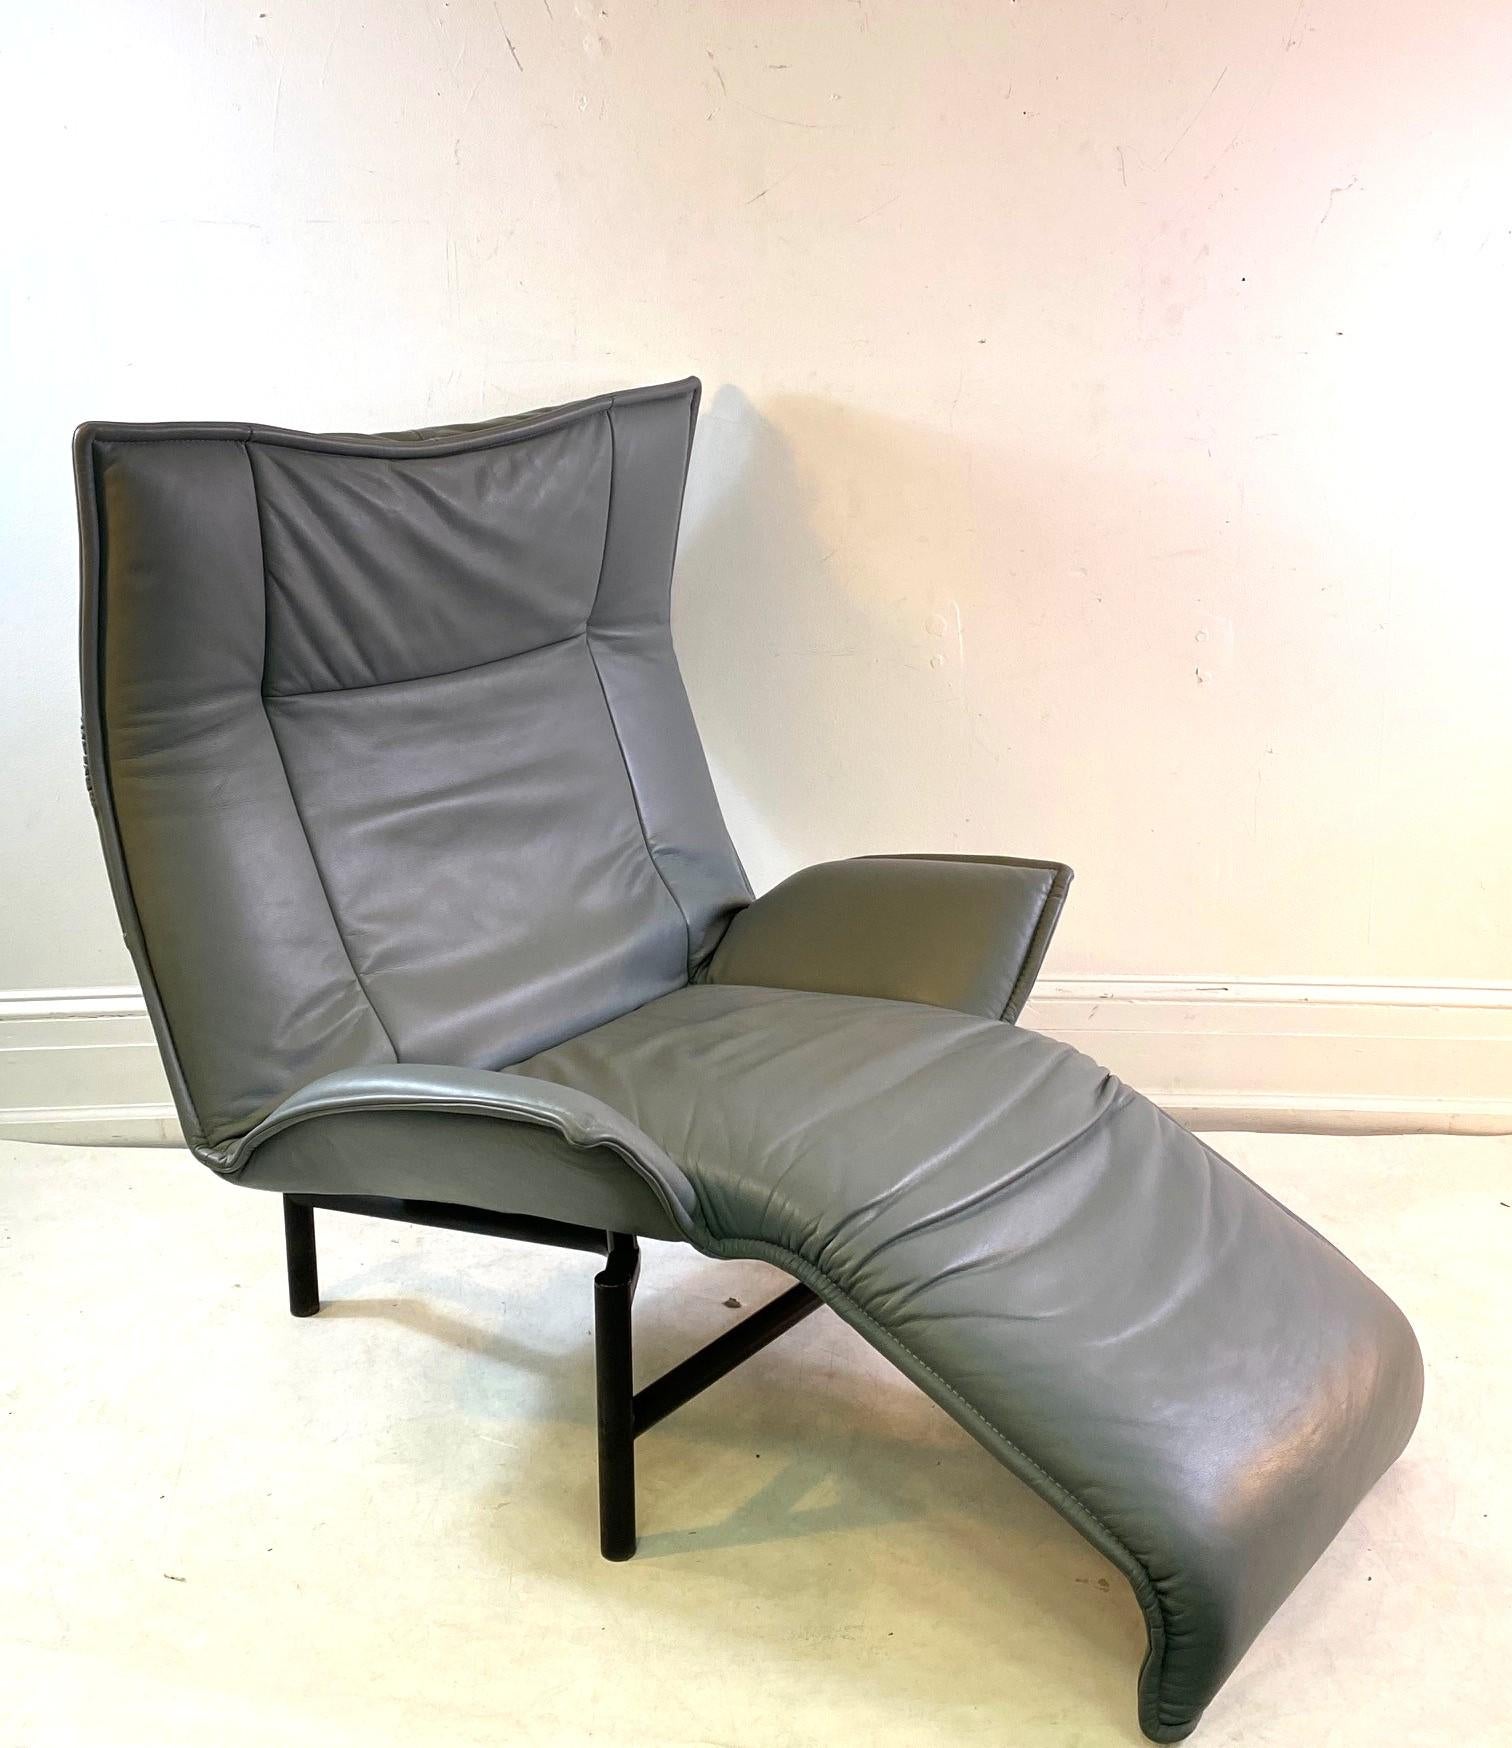 Paire de chaises longues Veranda de style moderne italien, conçues par Vico Magistretti pour Cassina. La paire a une structure en métal et un revêtement en cuir. Fabriqué dans les années 1980 en Italie. En excellent état vintage avec une usure et